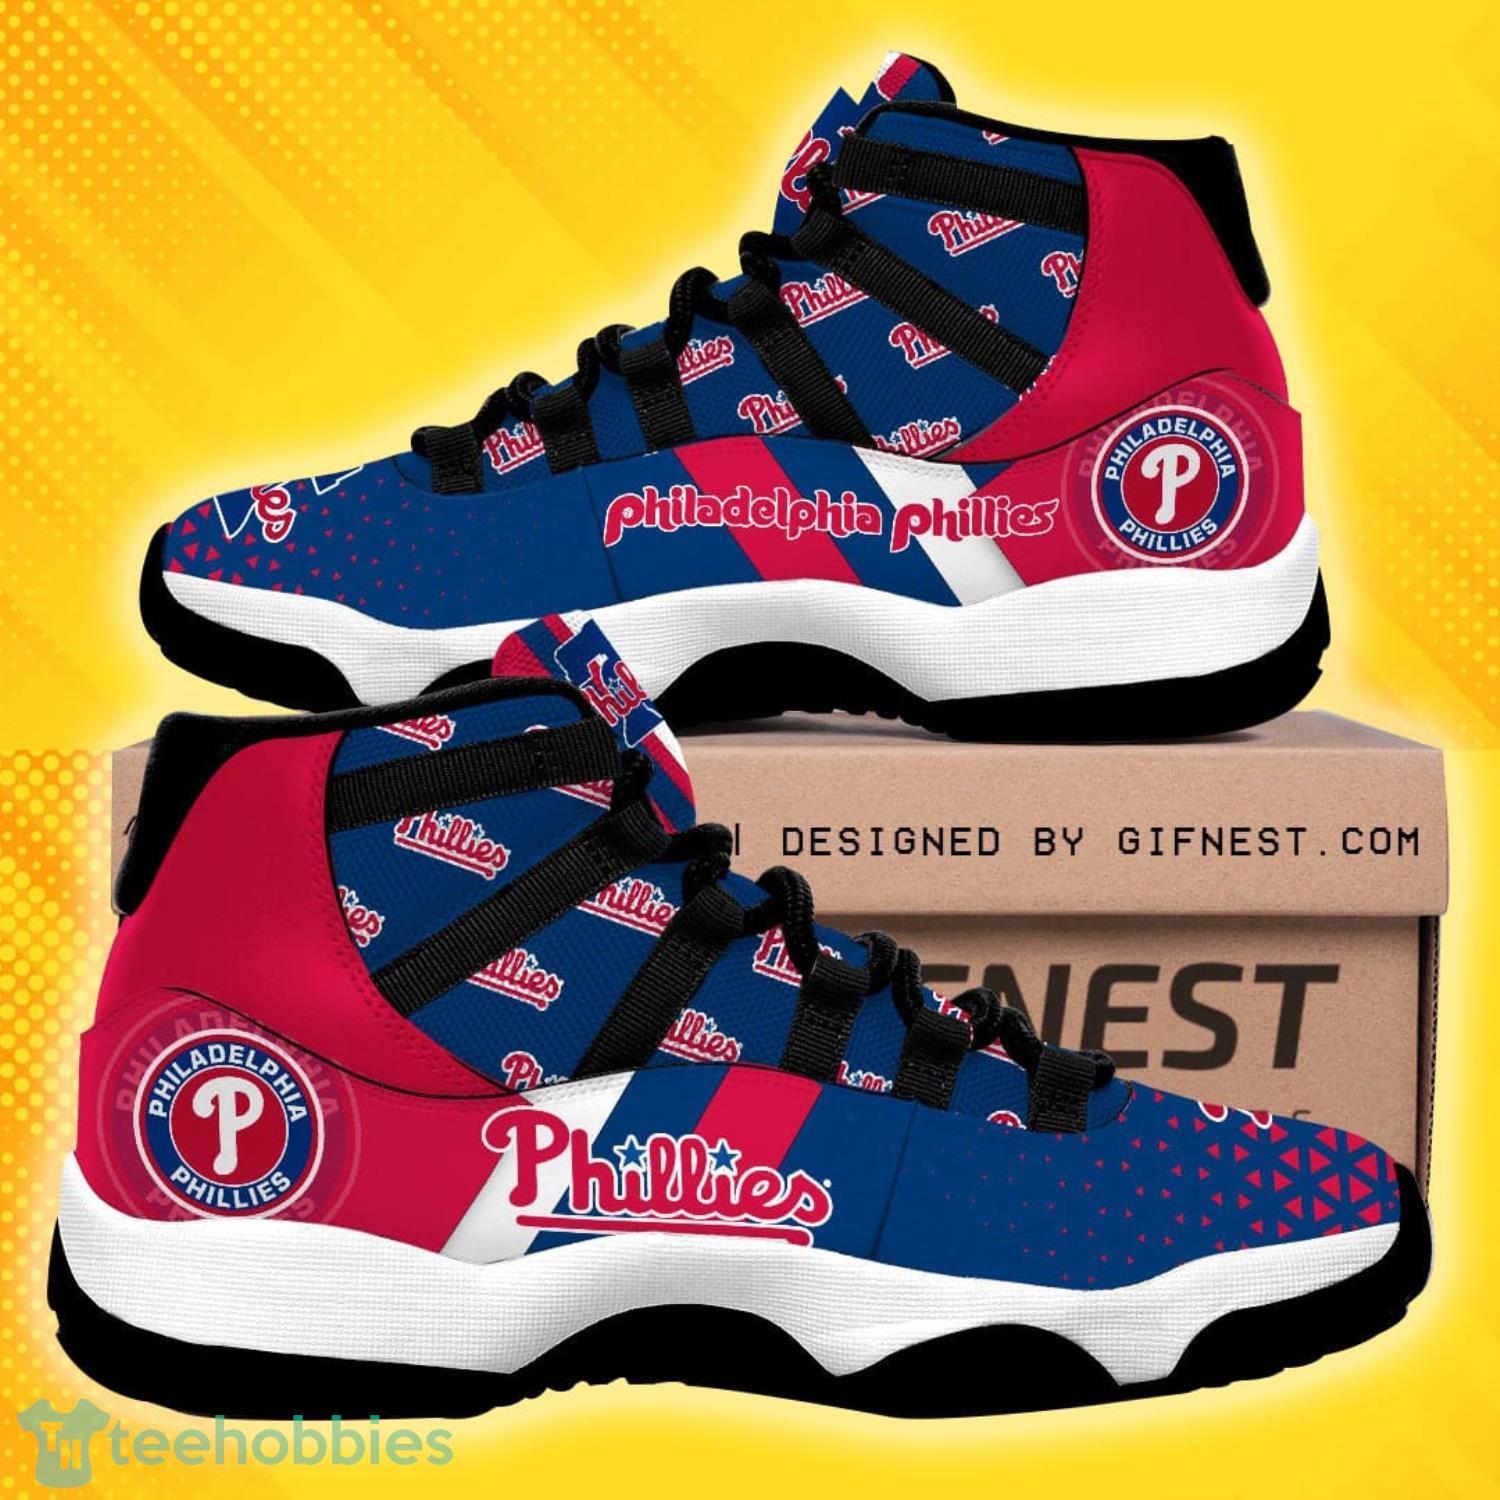 Philadelphia Phillies Team Air Jordan 11 Shoes For Fans Product Photo 1